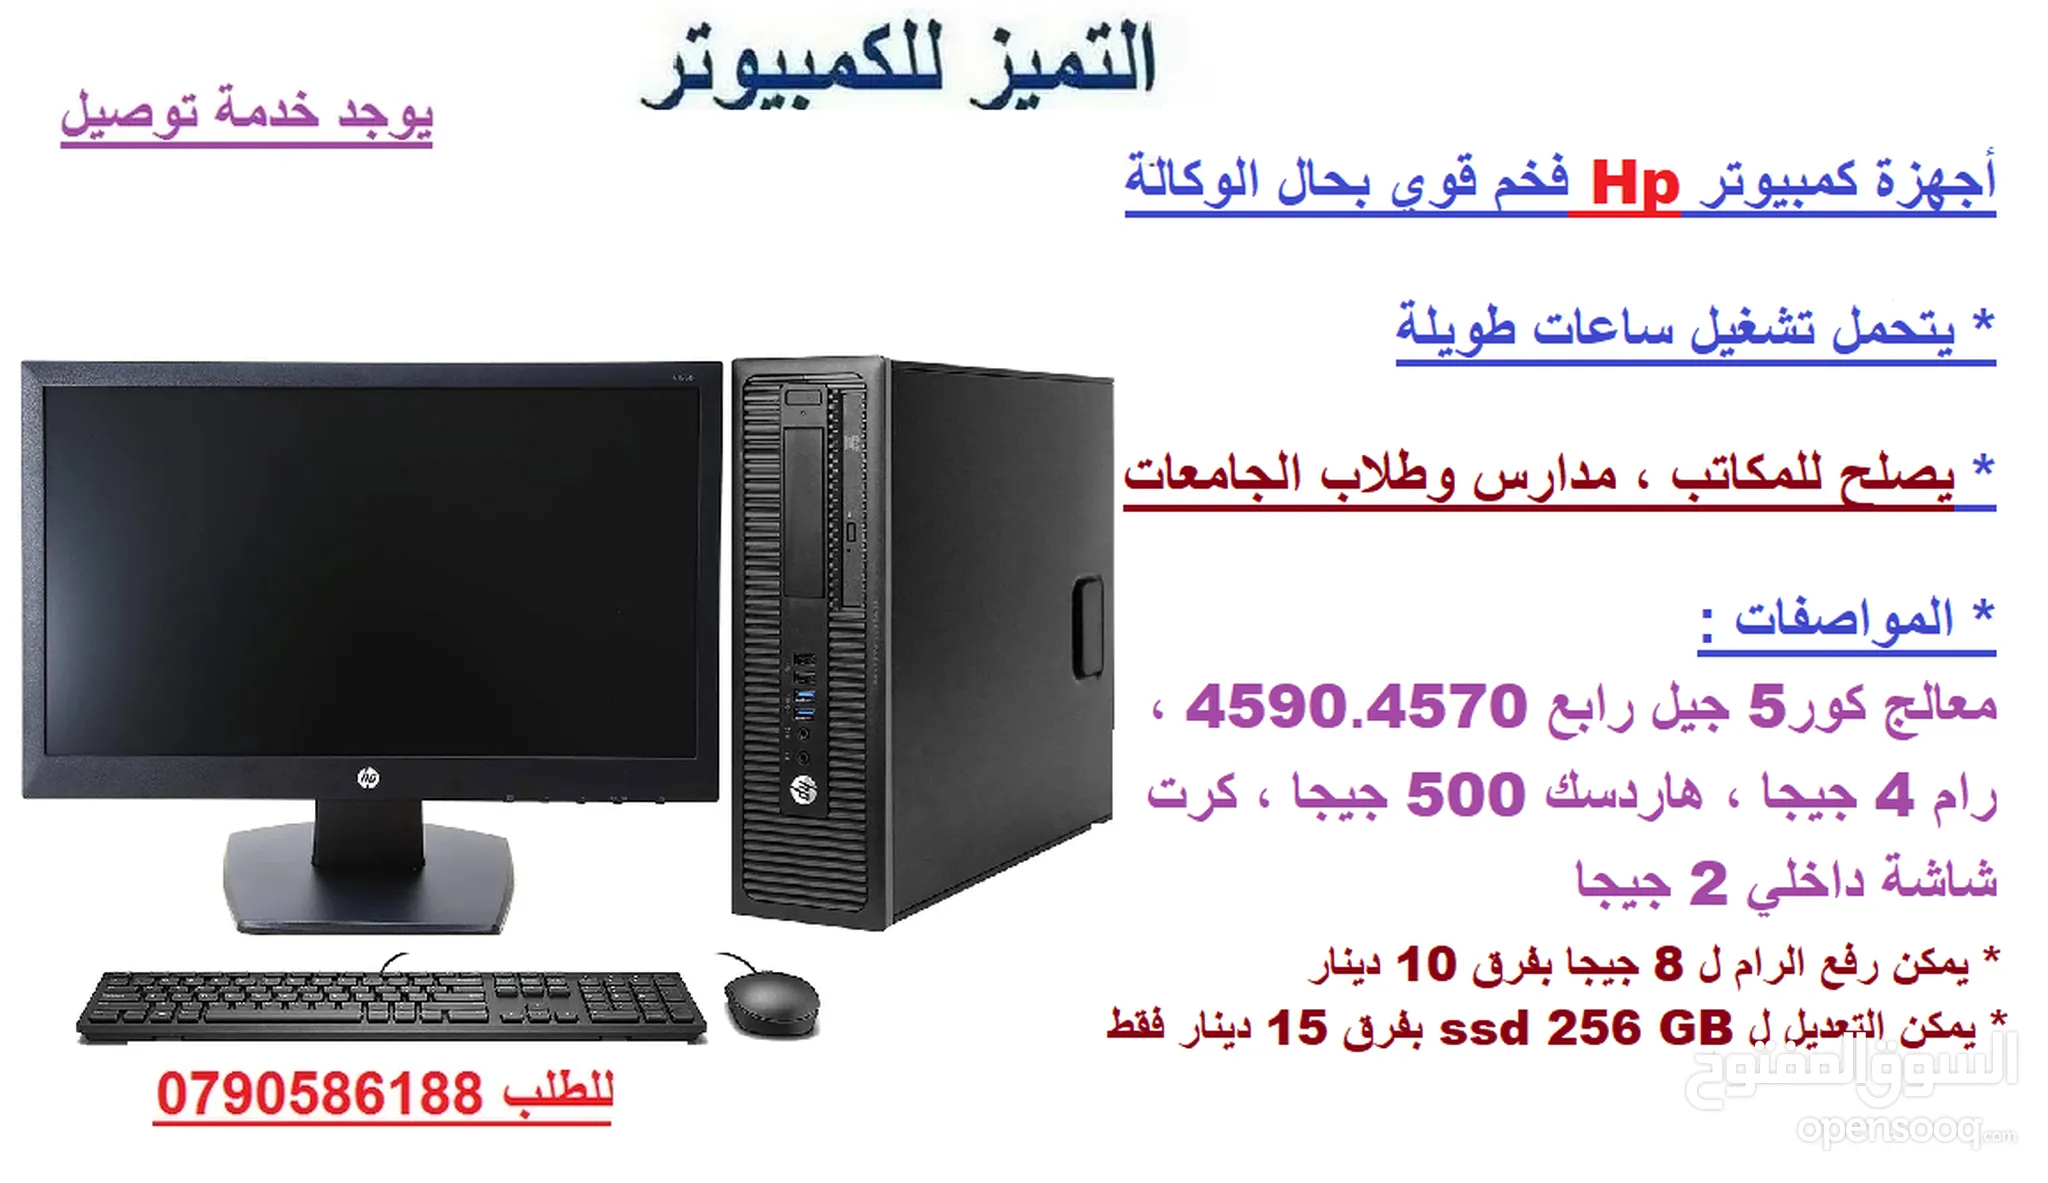 كمبيوتر مكتبي اتش بي للبيع في الأردن : افضل سعر | السوق المفتوح